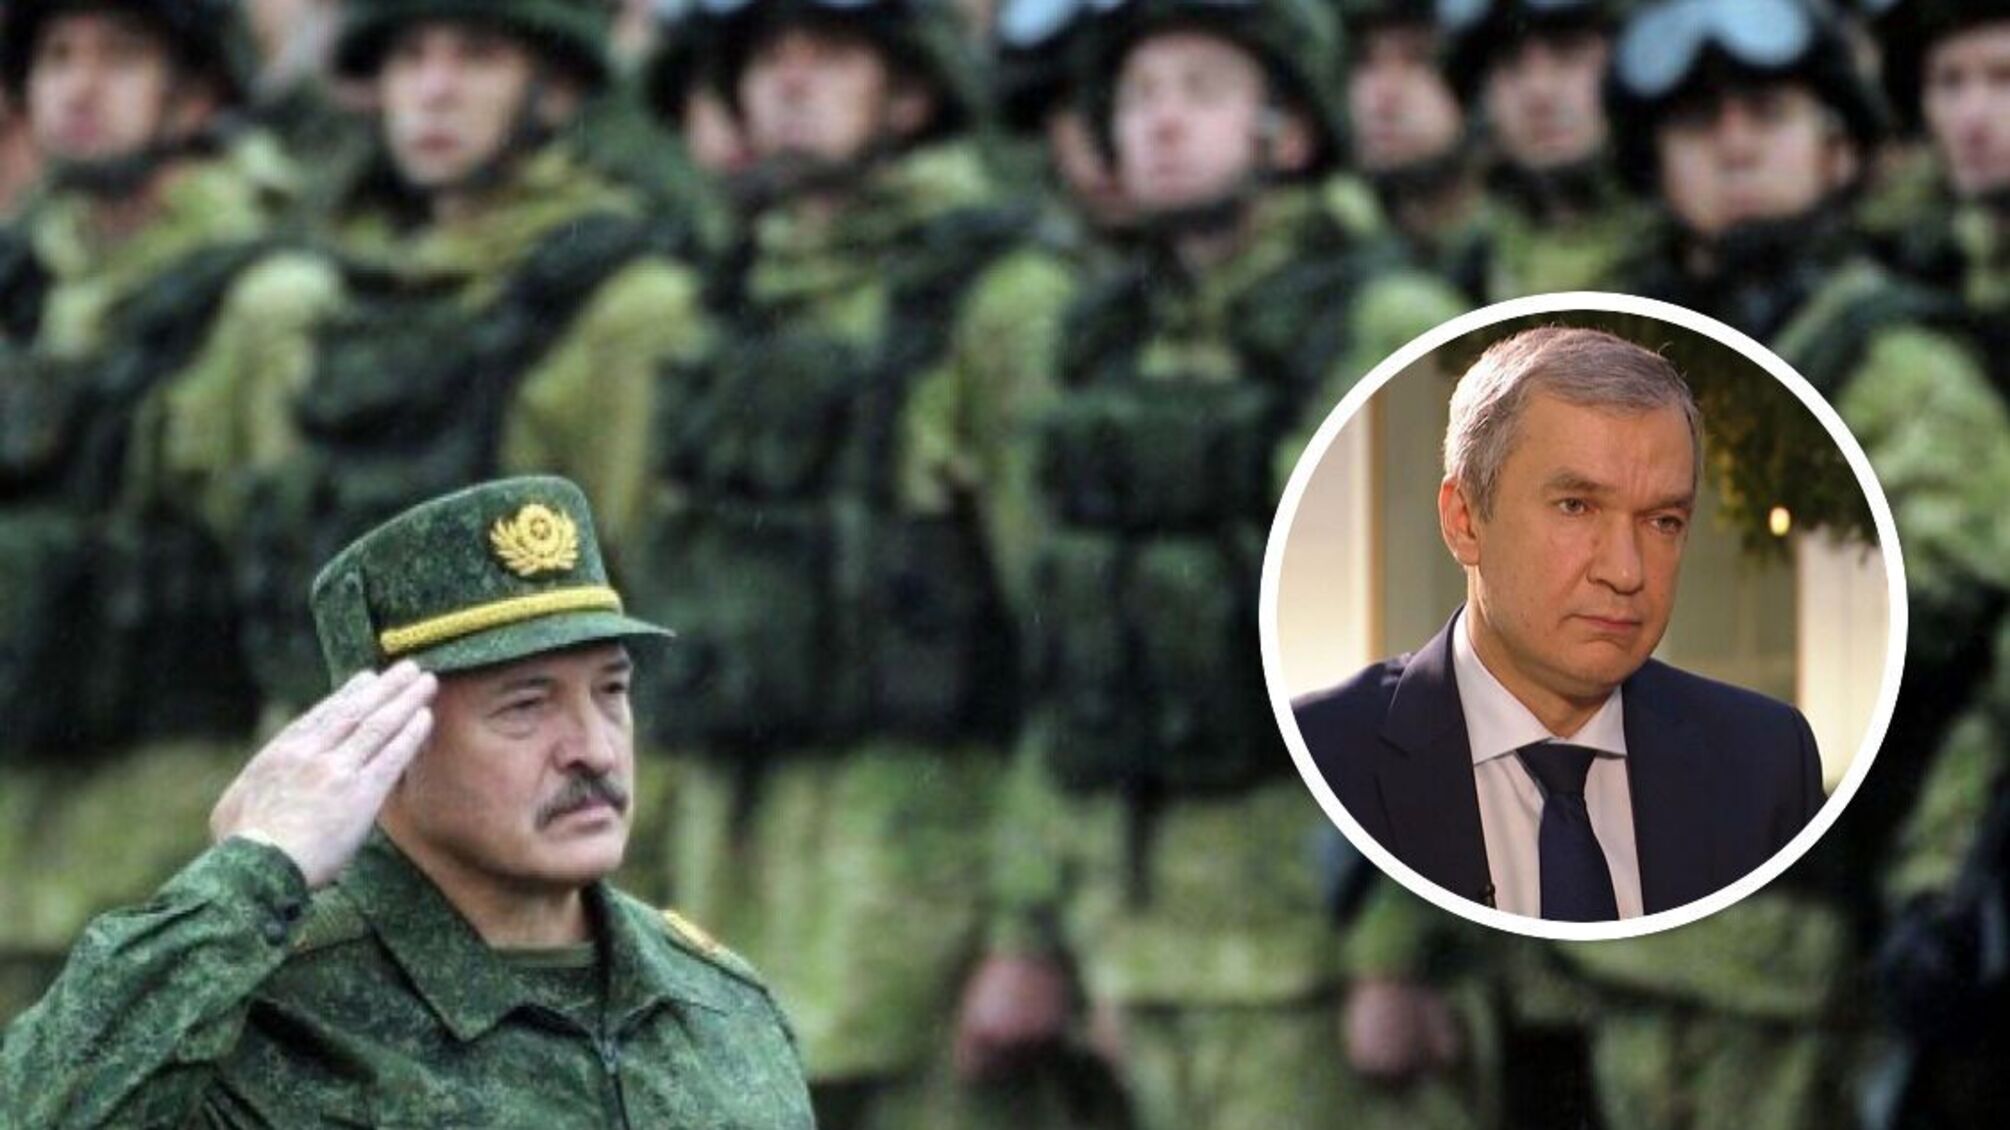 Білорусь готується до повномасштабної війни – член опозиційного уряду Латушко